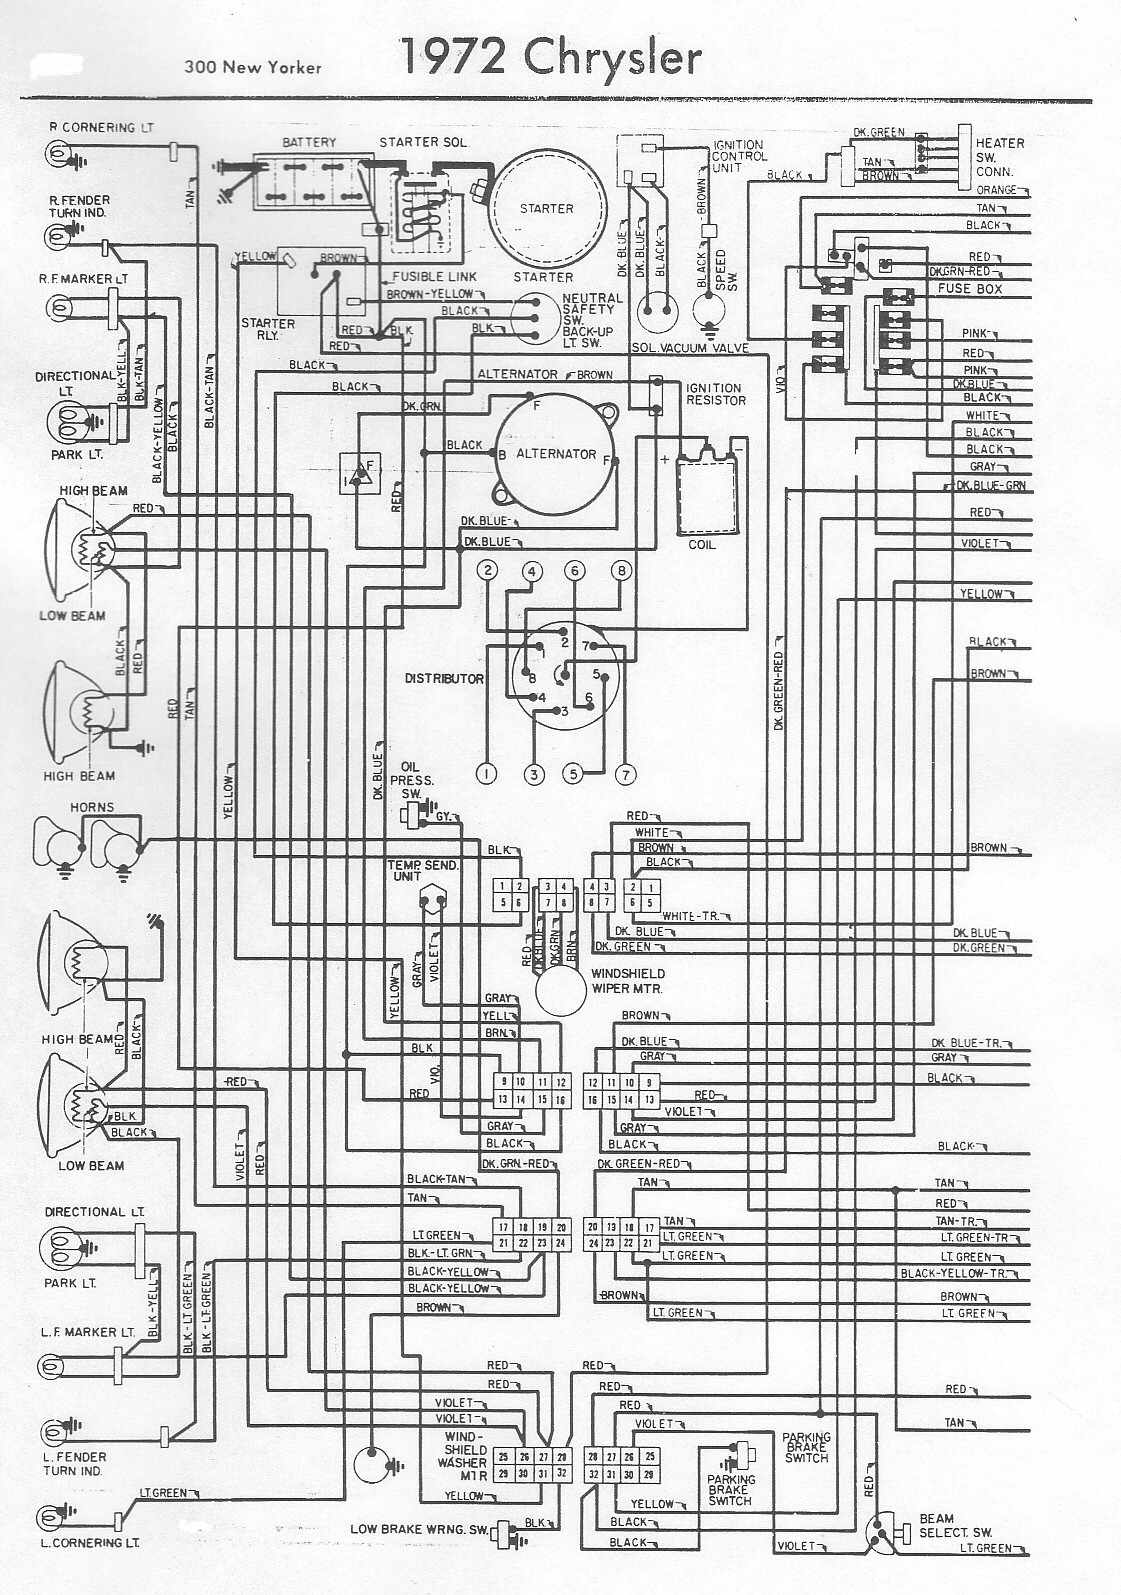 85 spider veloce wiring diagram